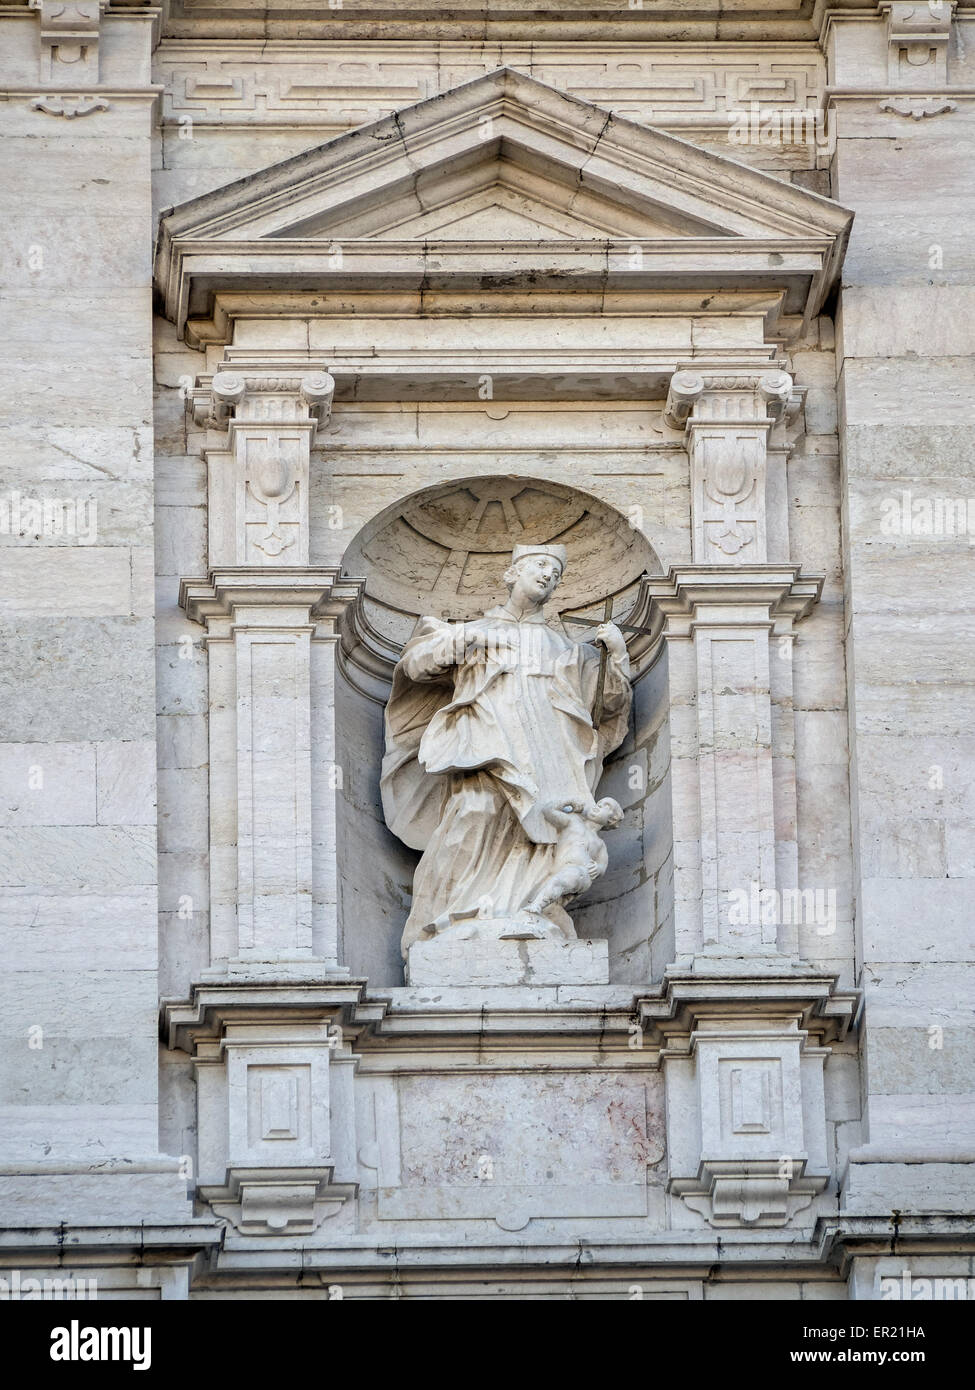 LISBONA, PORTOGALLO - 06 MARZO 2015: Statua di un santo sulla facciata anteriore del monastero di São Vicente de Fora Foto Stock